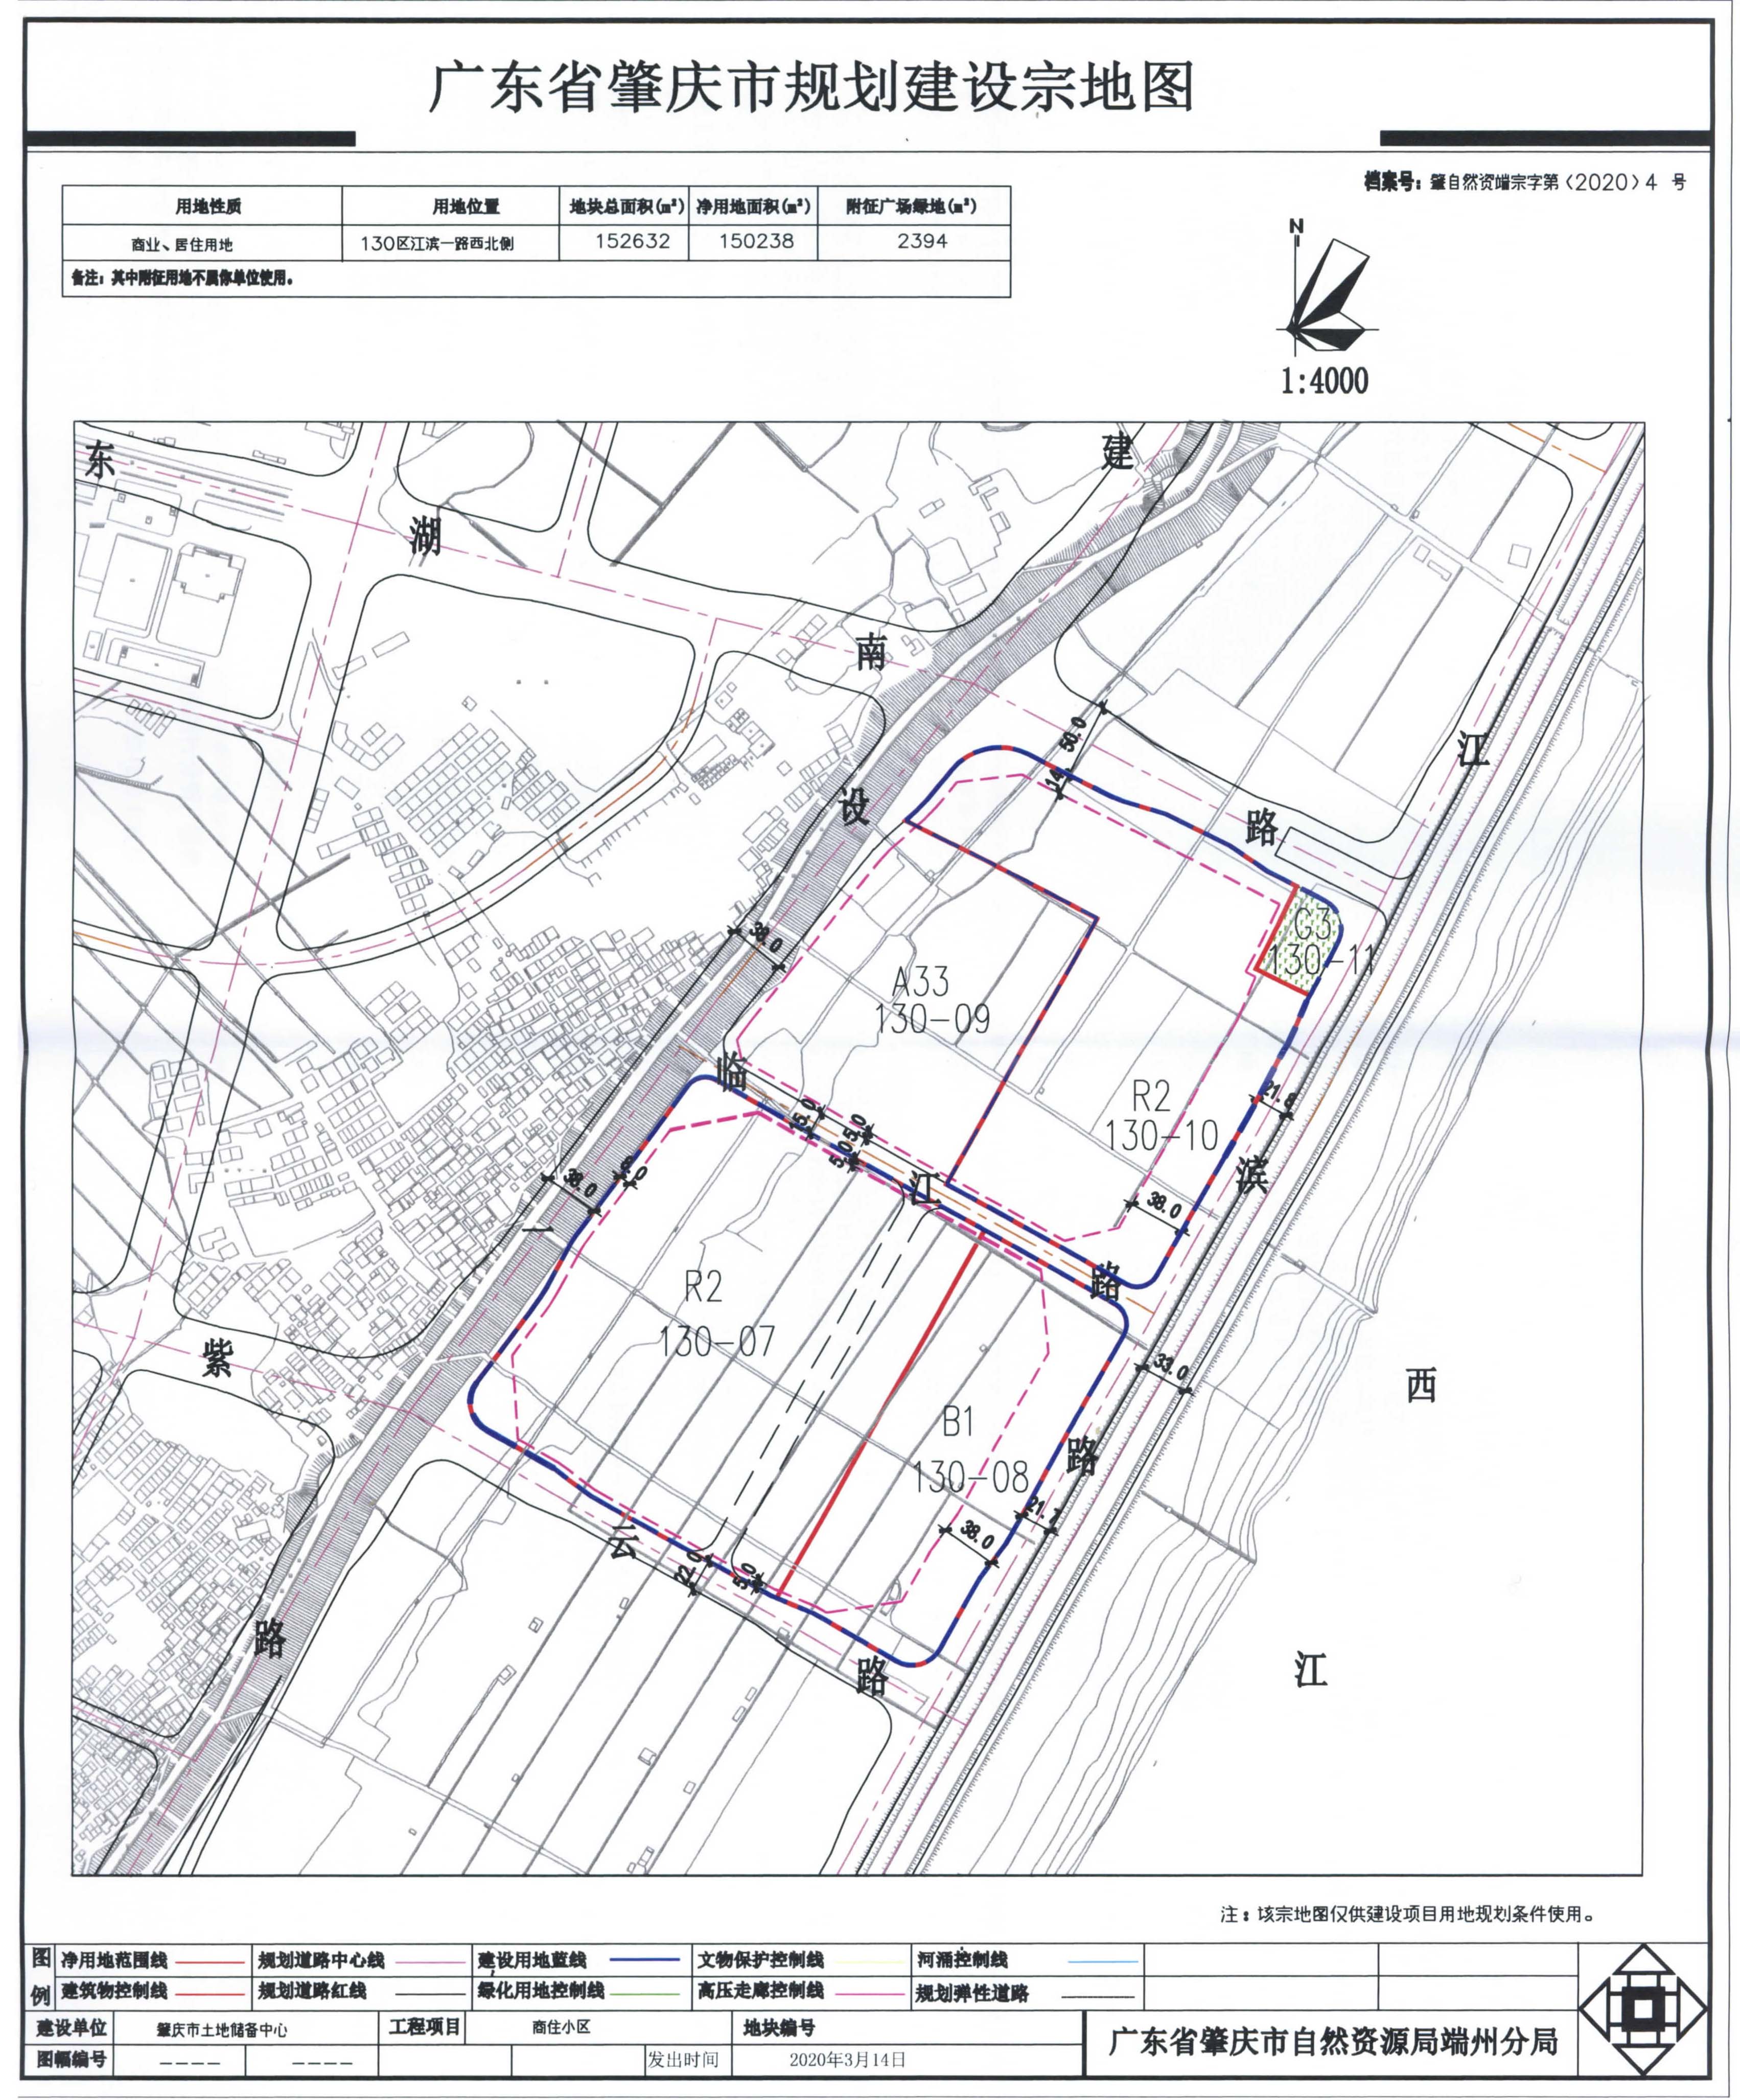 建设项目宗地规划设计条件和广东省肇庆市规划建设宗地图-2.jpg